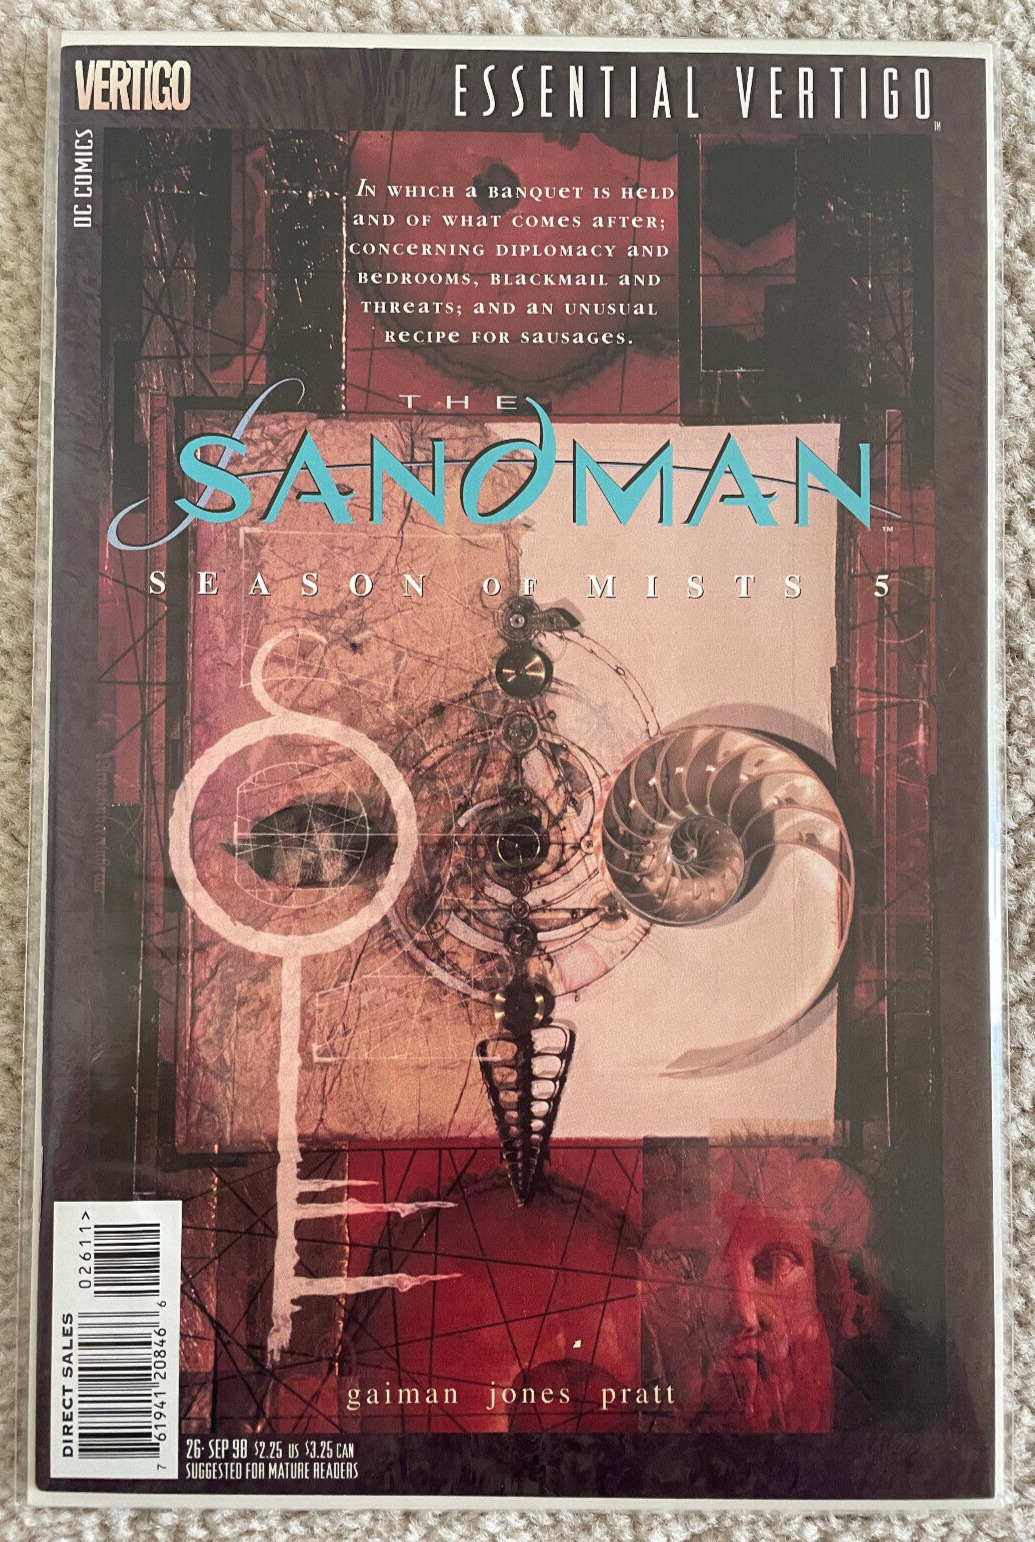 Essential Vertigo: The Sandman #26 DC Comics Vertigo Neil Gaiman September 1998